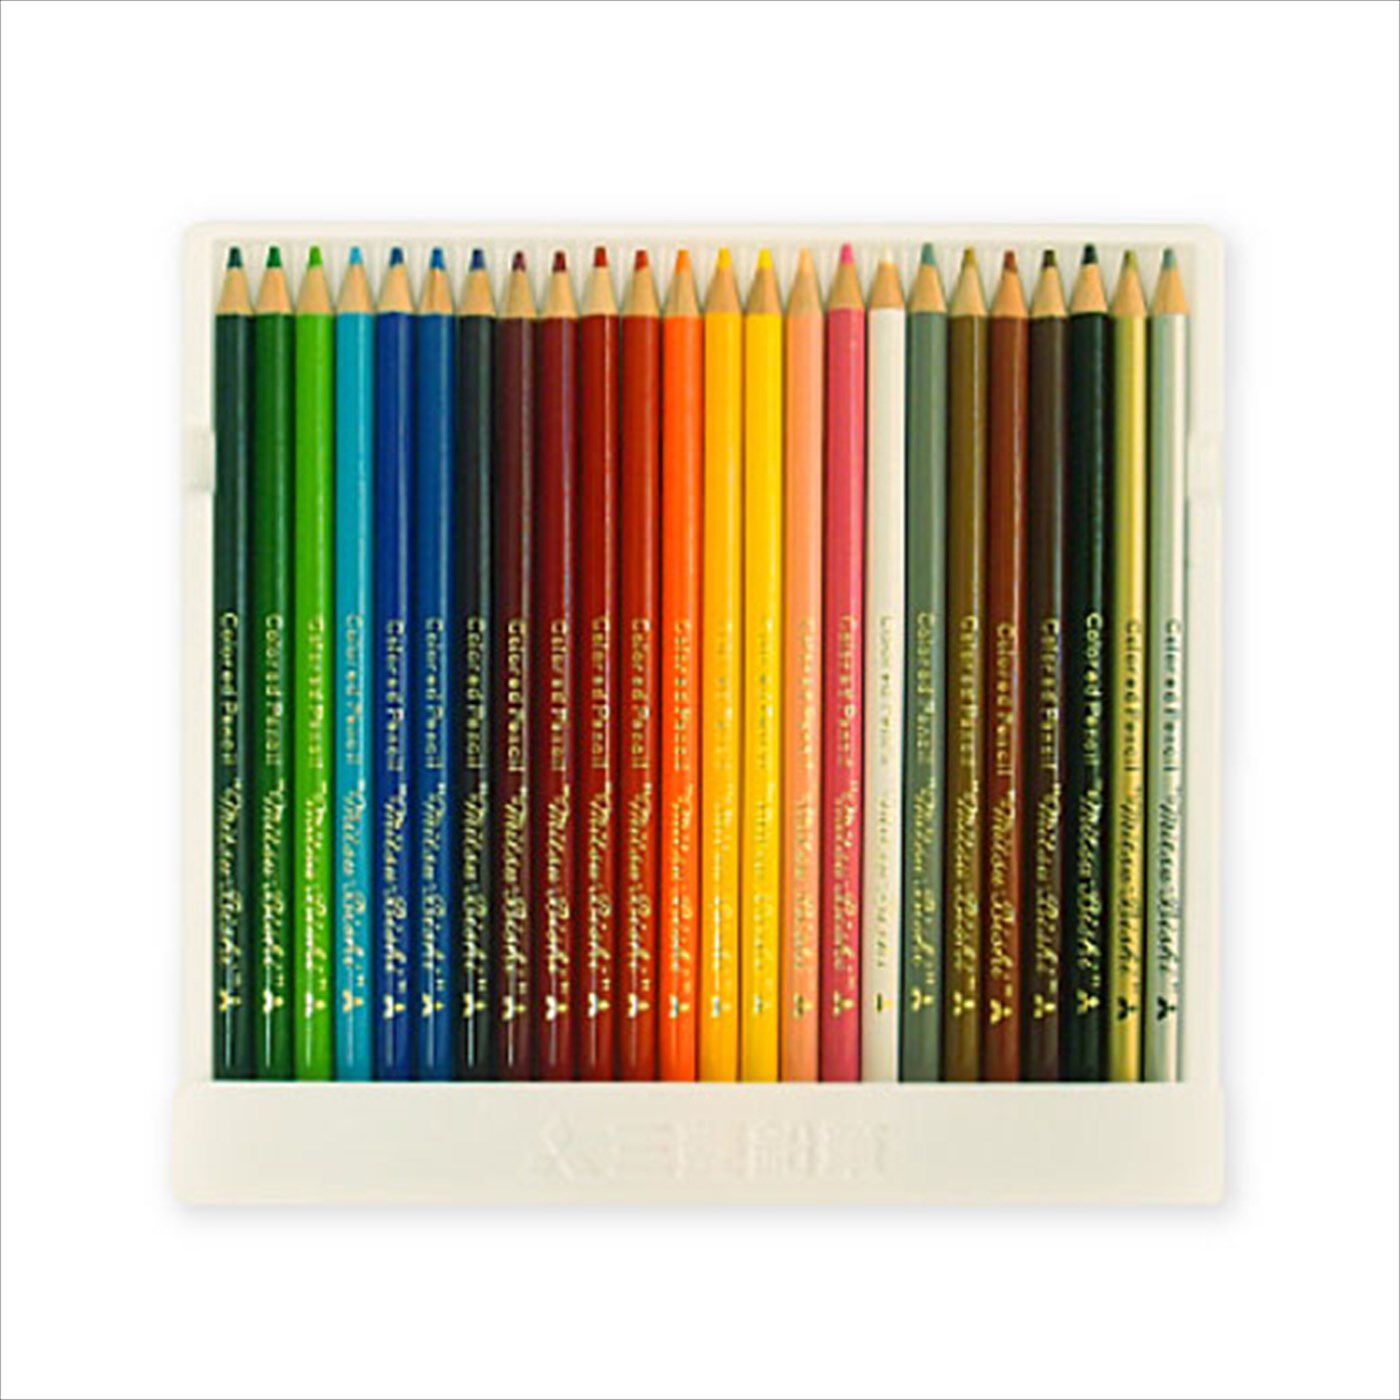 ミニツク|マンダラぬり絵ダイアリーに最適な色鉛筆|金・銀を含めた充実の24色のセットです。